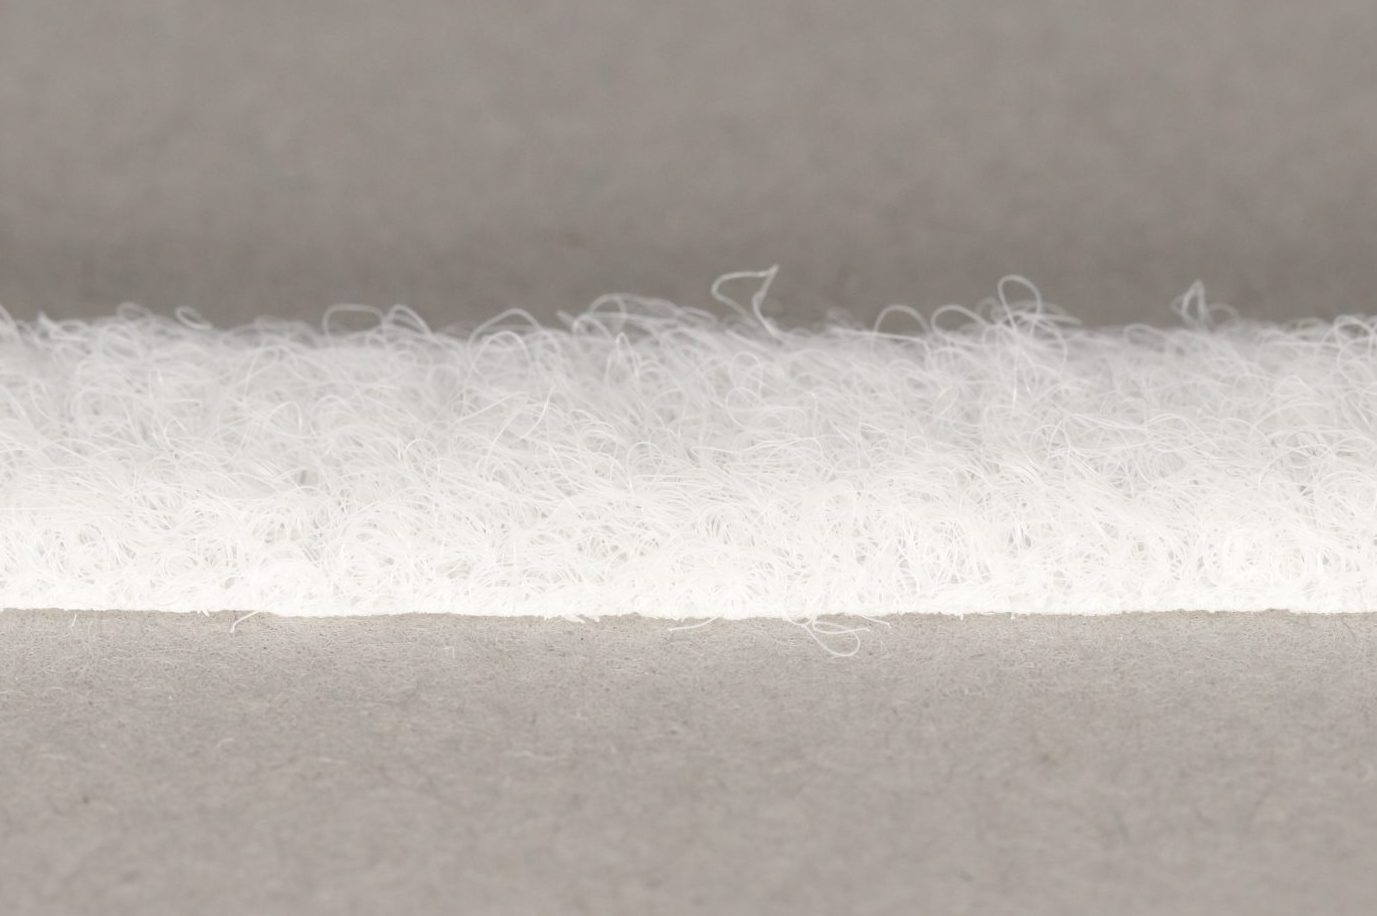 VELCRO® Brand Sew-on 10mm tape WHITE HOOK 25mtr roll